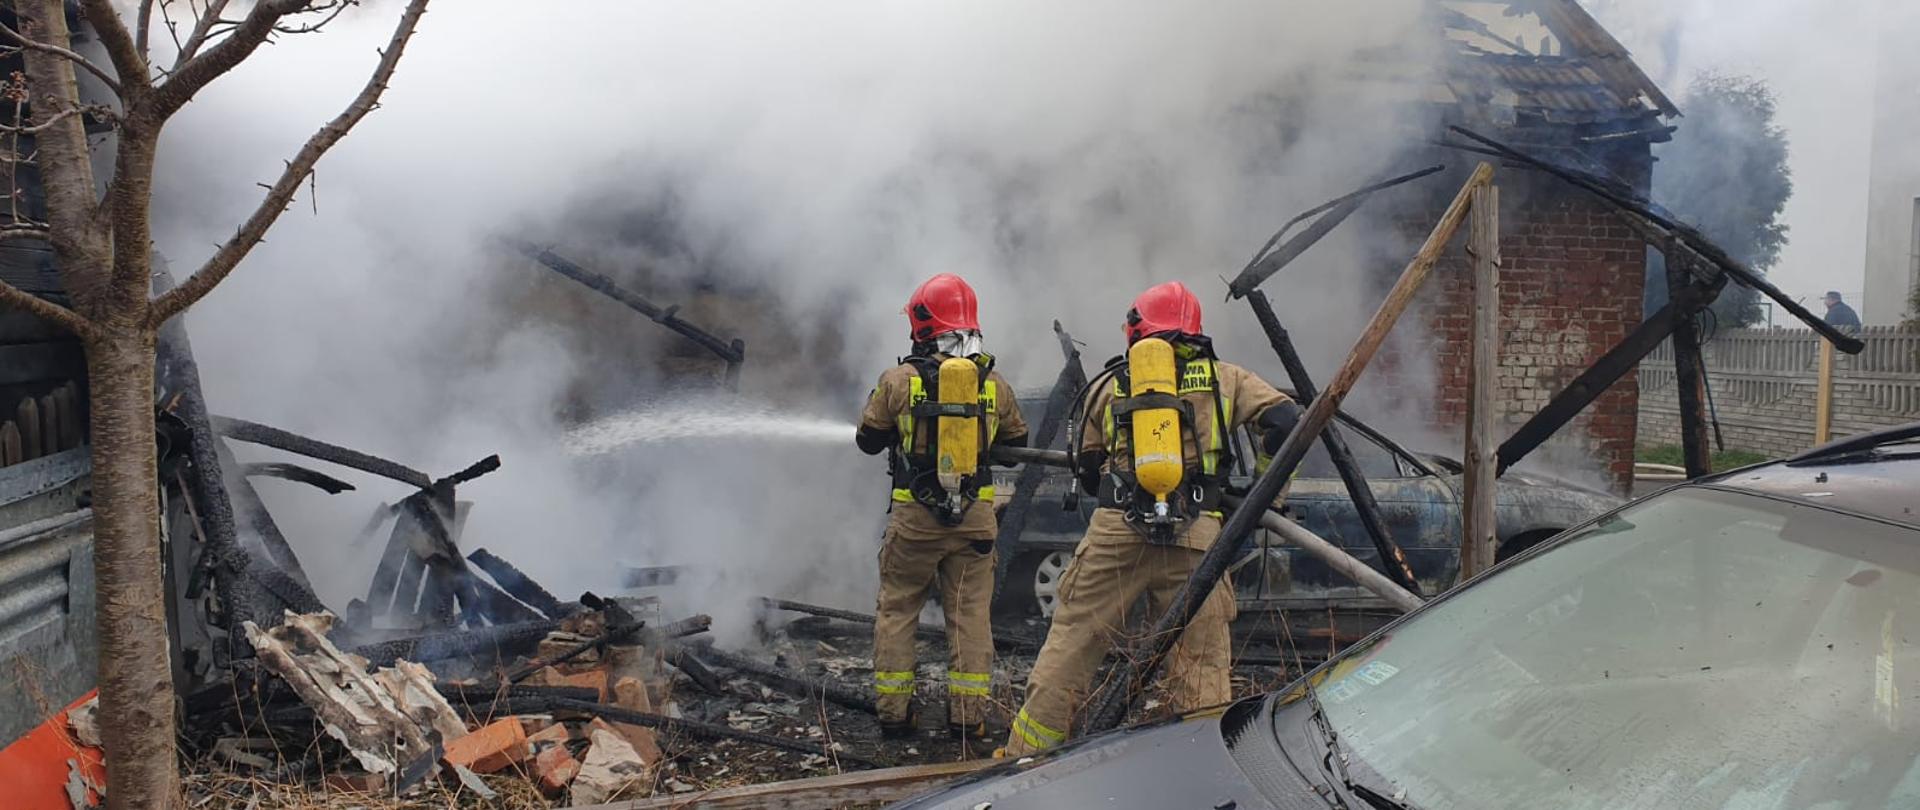 Na zdjęciu widać strażaków ubranych w ubrania bojowe i aparaty ochrony układu oddechowego, gaszących pożar budynku gospodarczego. Przed nimi widać gęste kłęby dymu. W pobliżu znajduje się samochód osobowy.